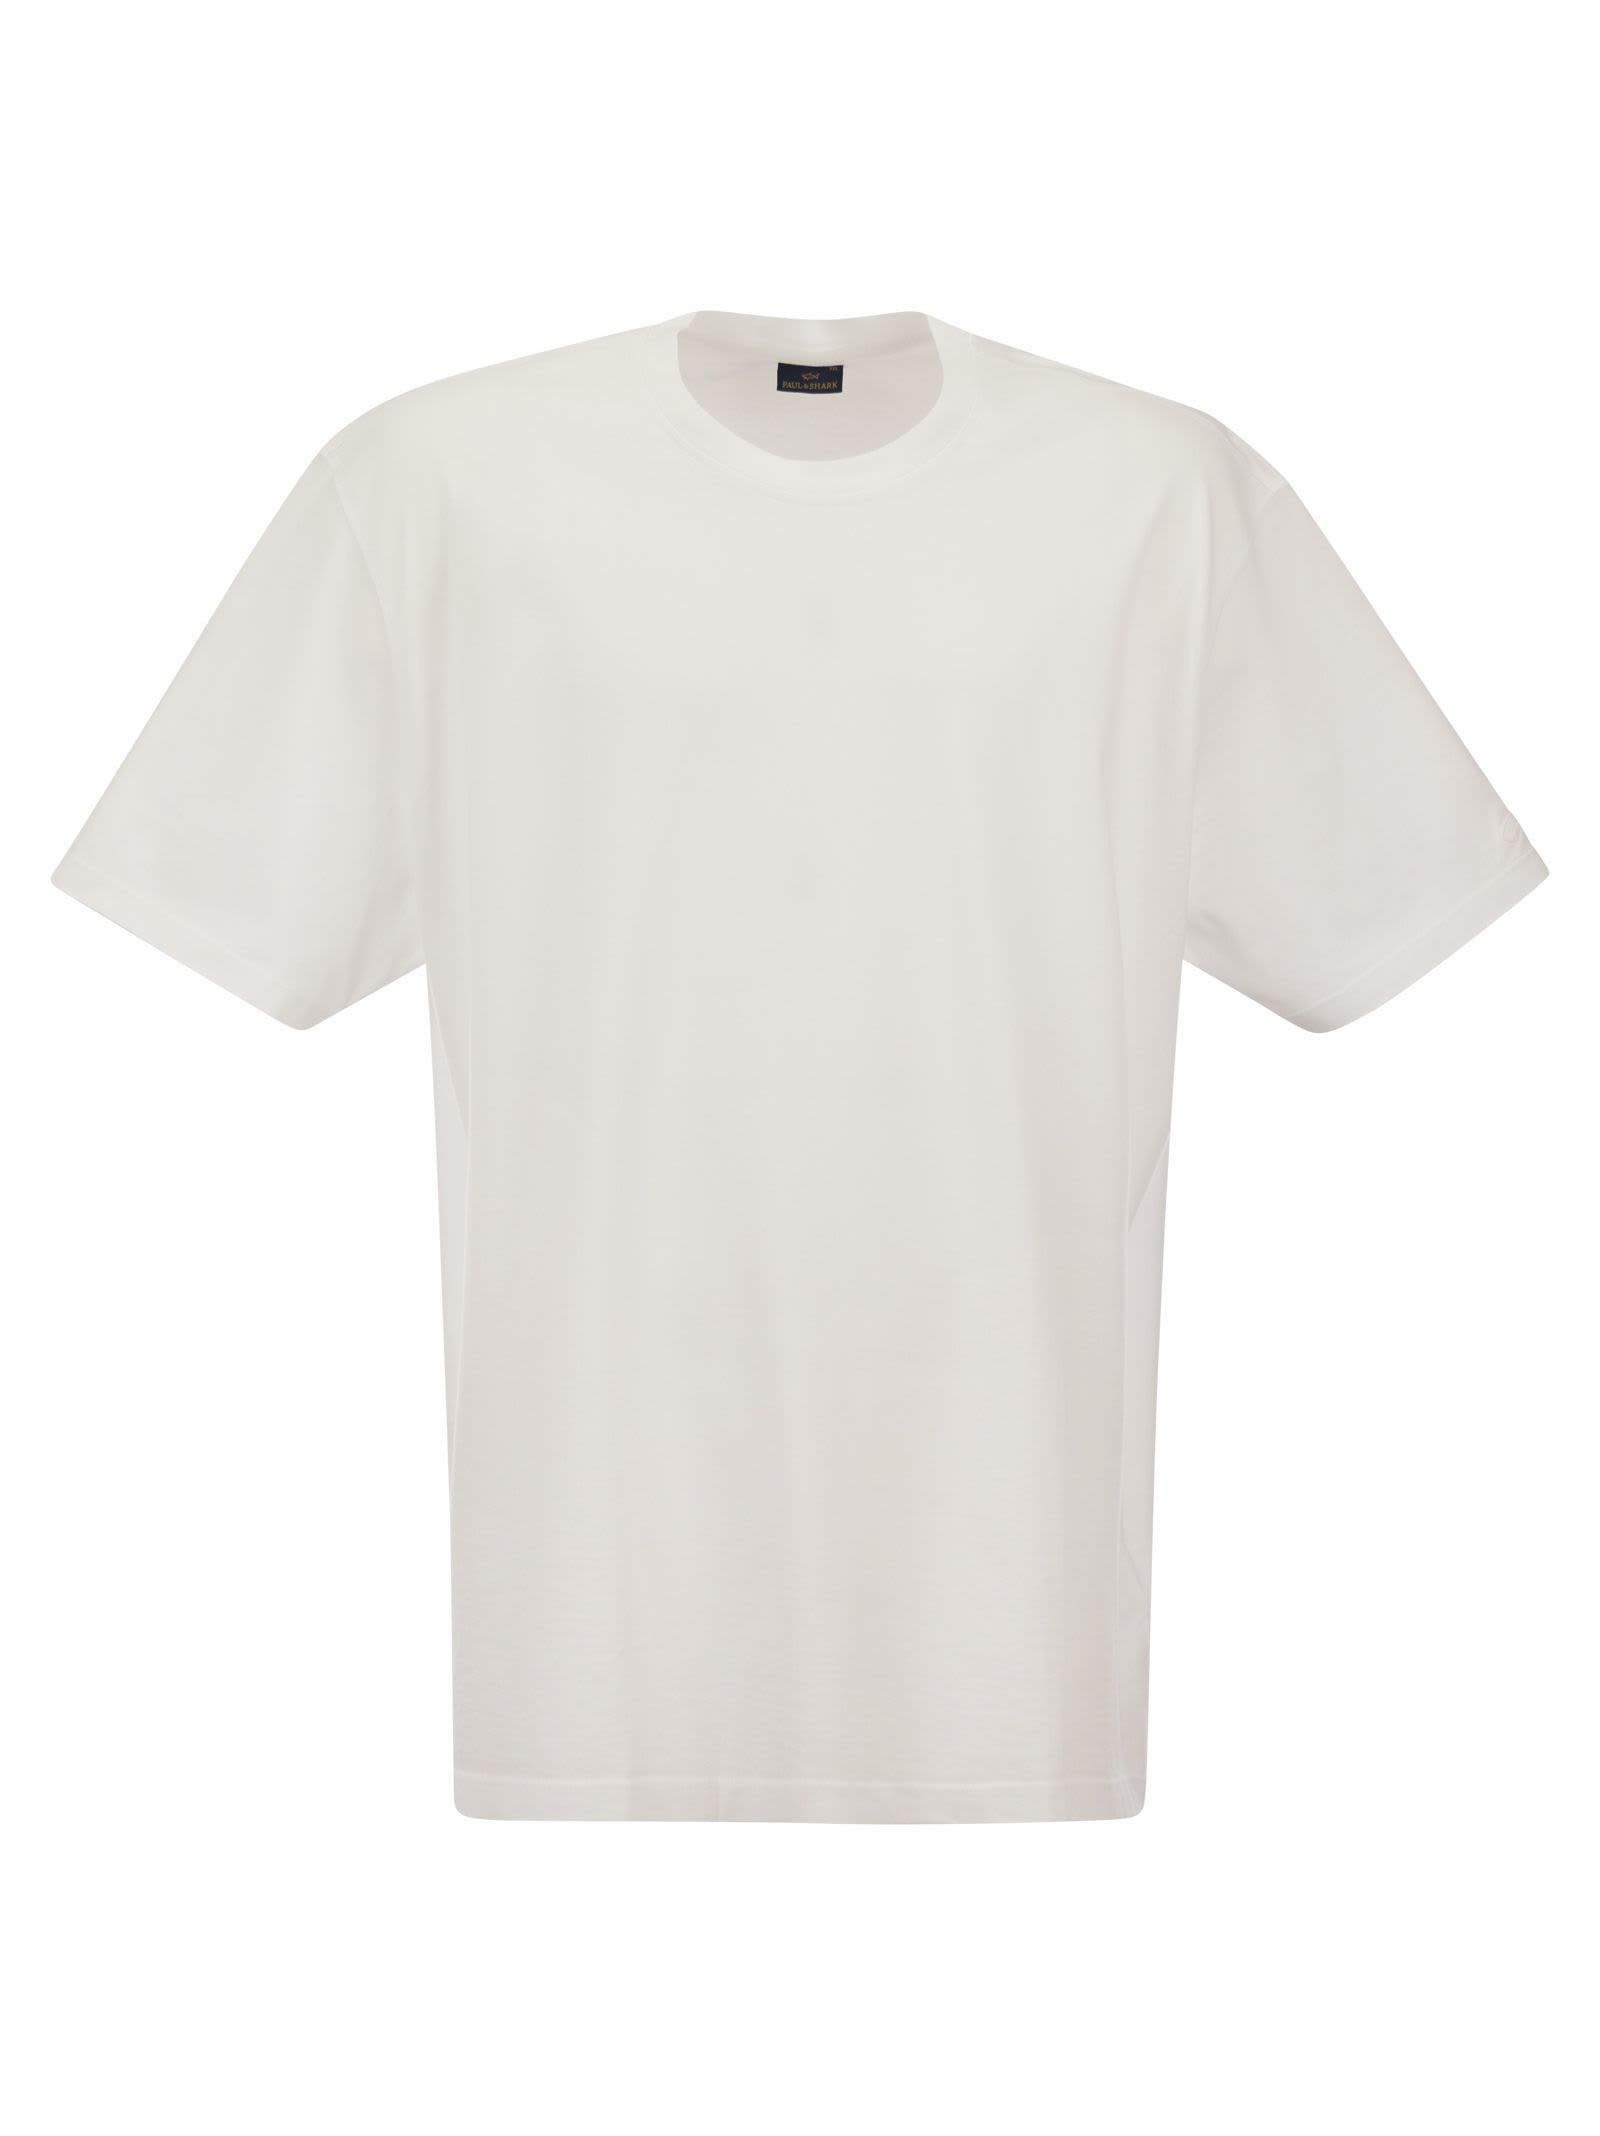 Shop Paul&amp;shark Garment Dyed Cotton Jersey T-shirt